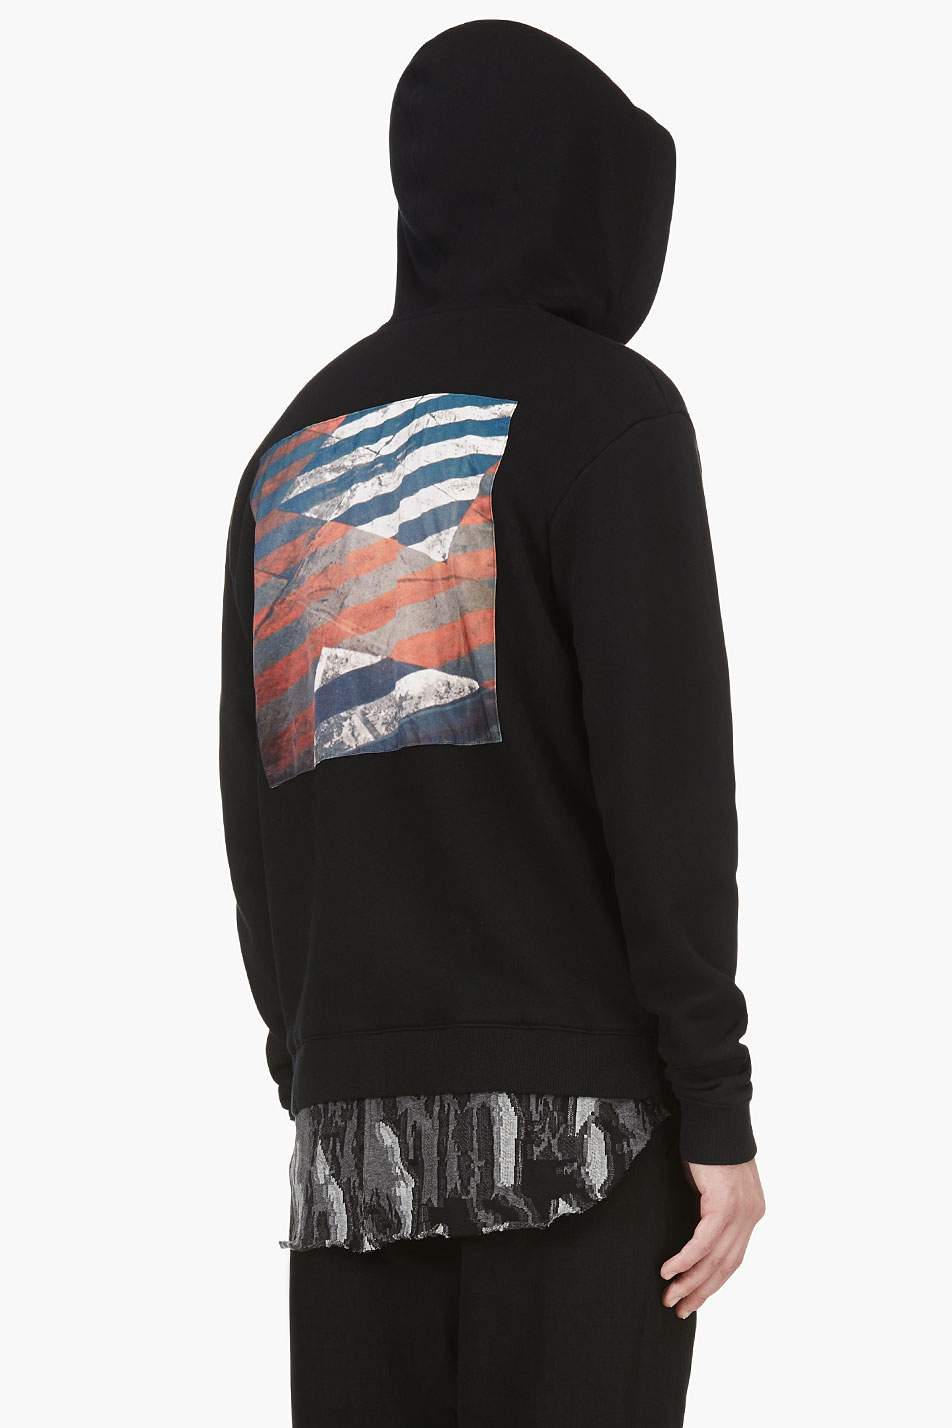 robert-geller-black-black-tarmac-patch-zip-up-hoodie-hoodies-product-1-18858512-3-121531233-normal.jpeg